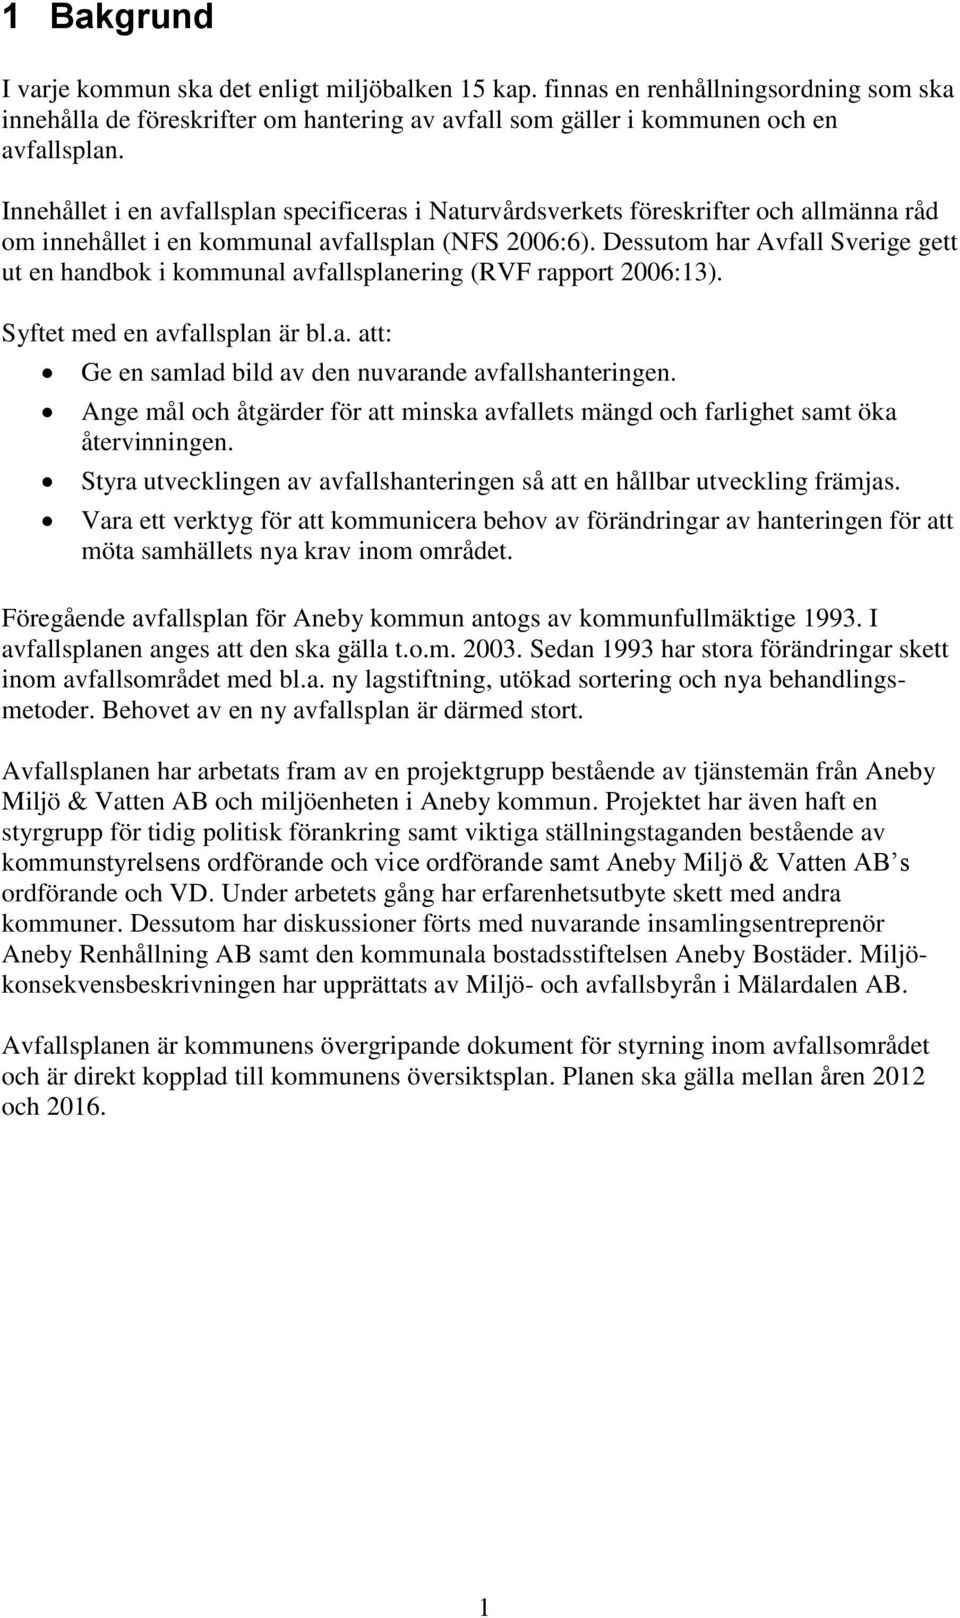 Dessutom har Avfall Sverige gett ut en handbok i kommunal avfallsplanering (RVF rapport 2006:13). Syftet med en avfallsplan är bl.a. att: Ge en samlad bild av den nuvarande avfallshanteringen.